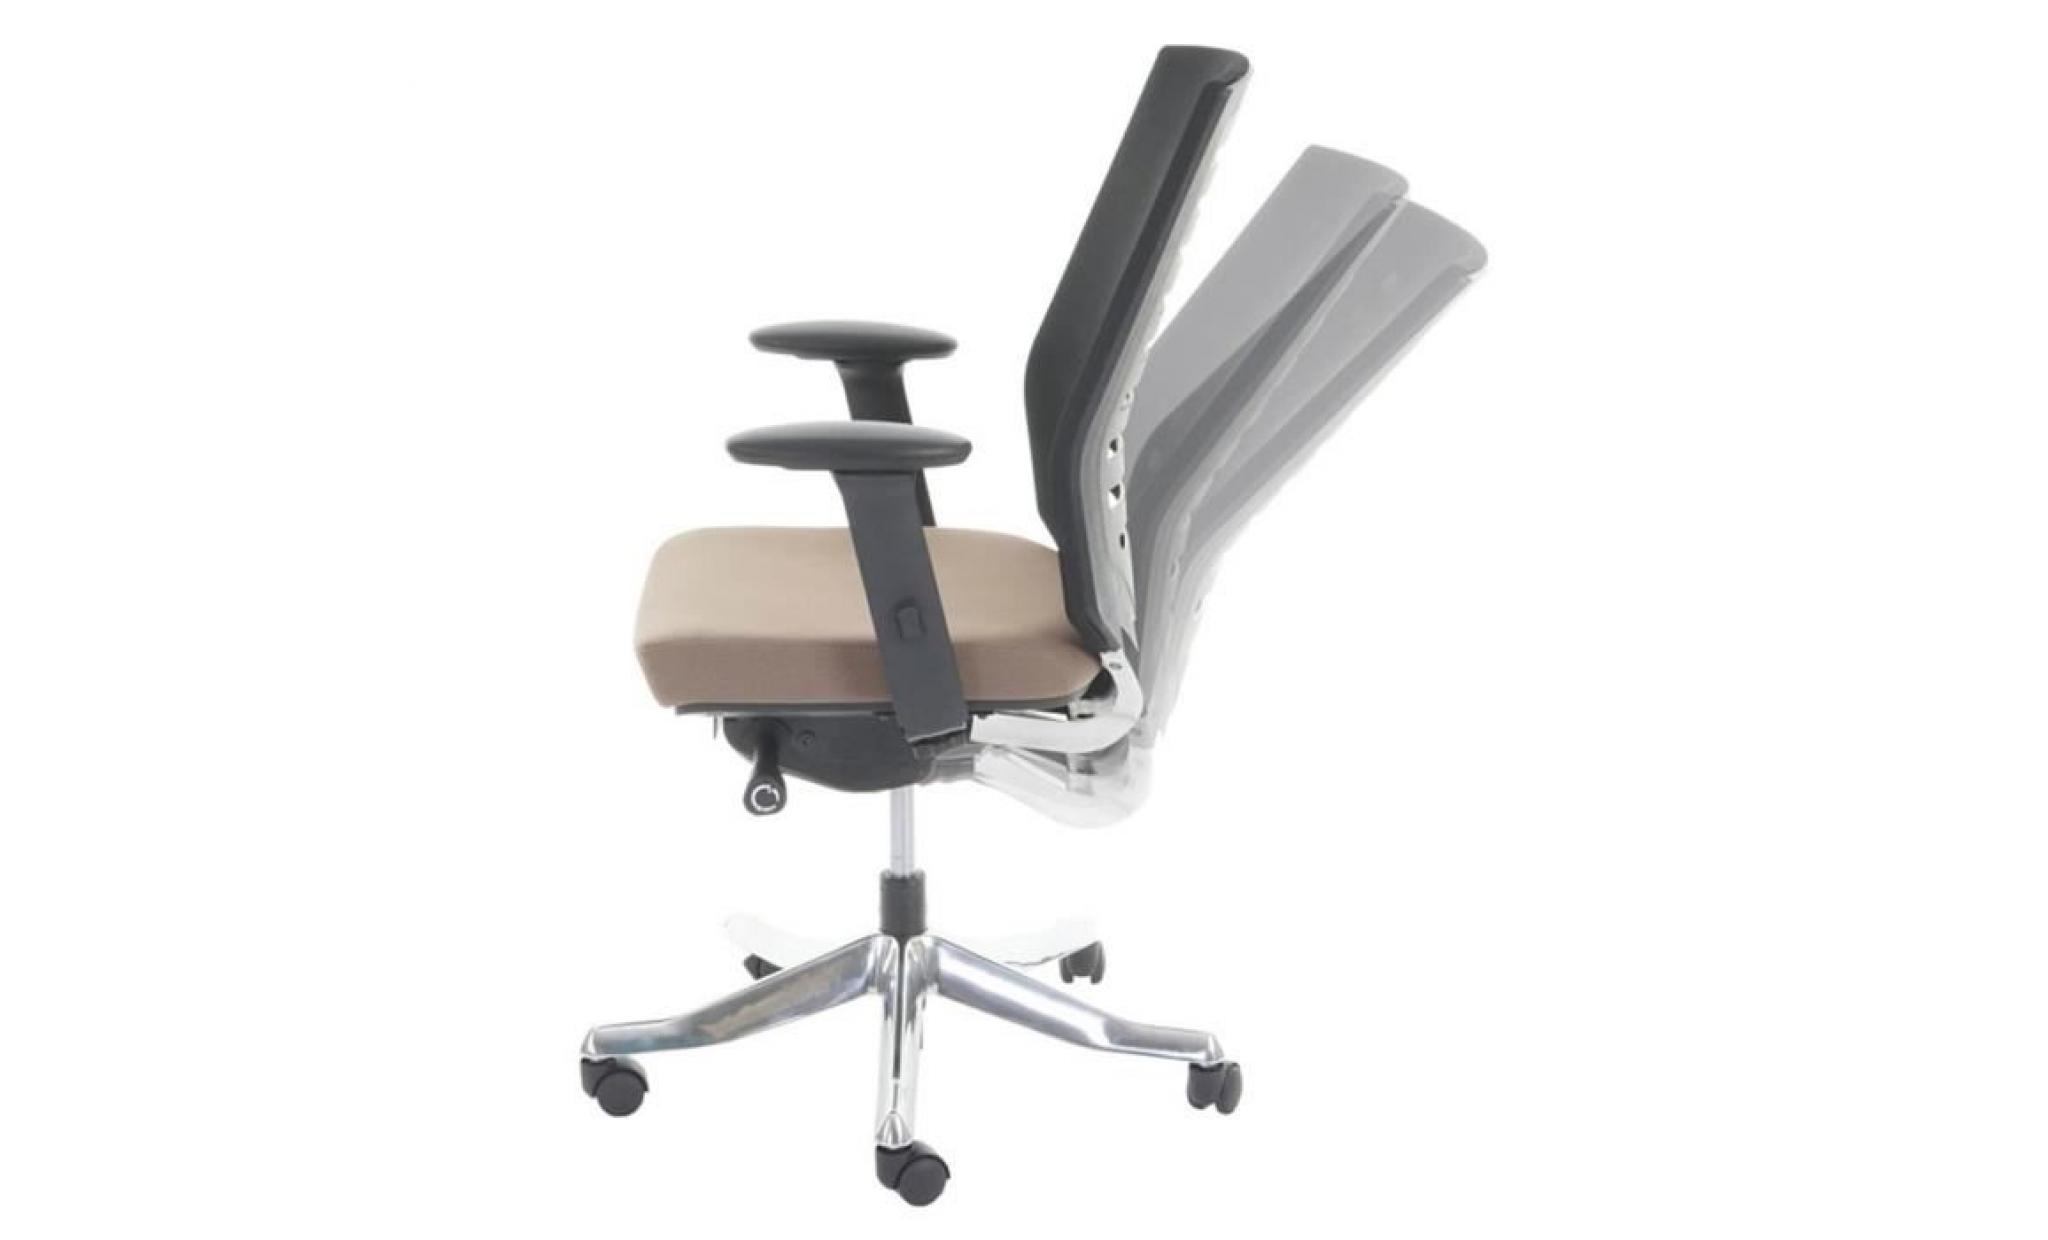 chaise de bureau coloris taupe   dim : h 98   110 x l 68 x p 70 cm pas cher